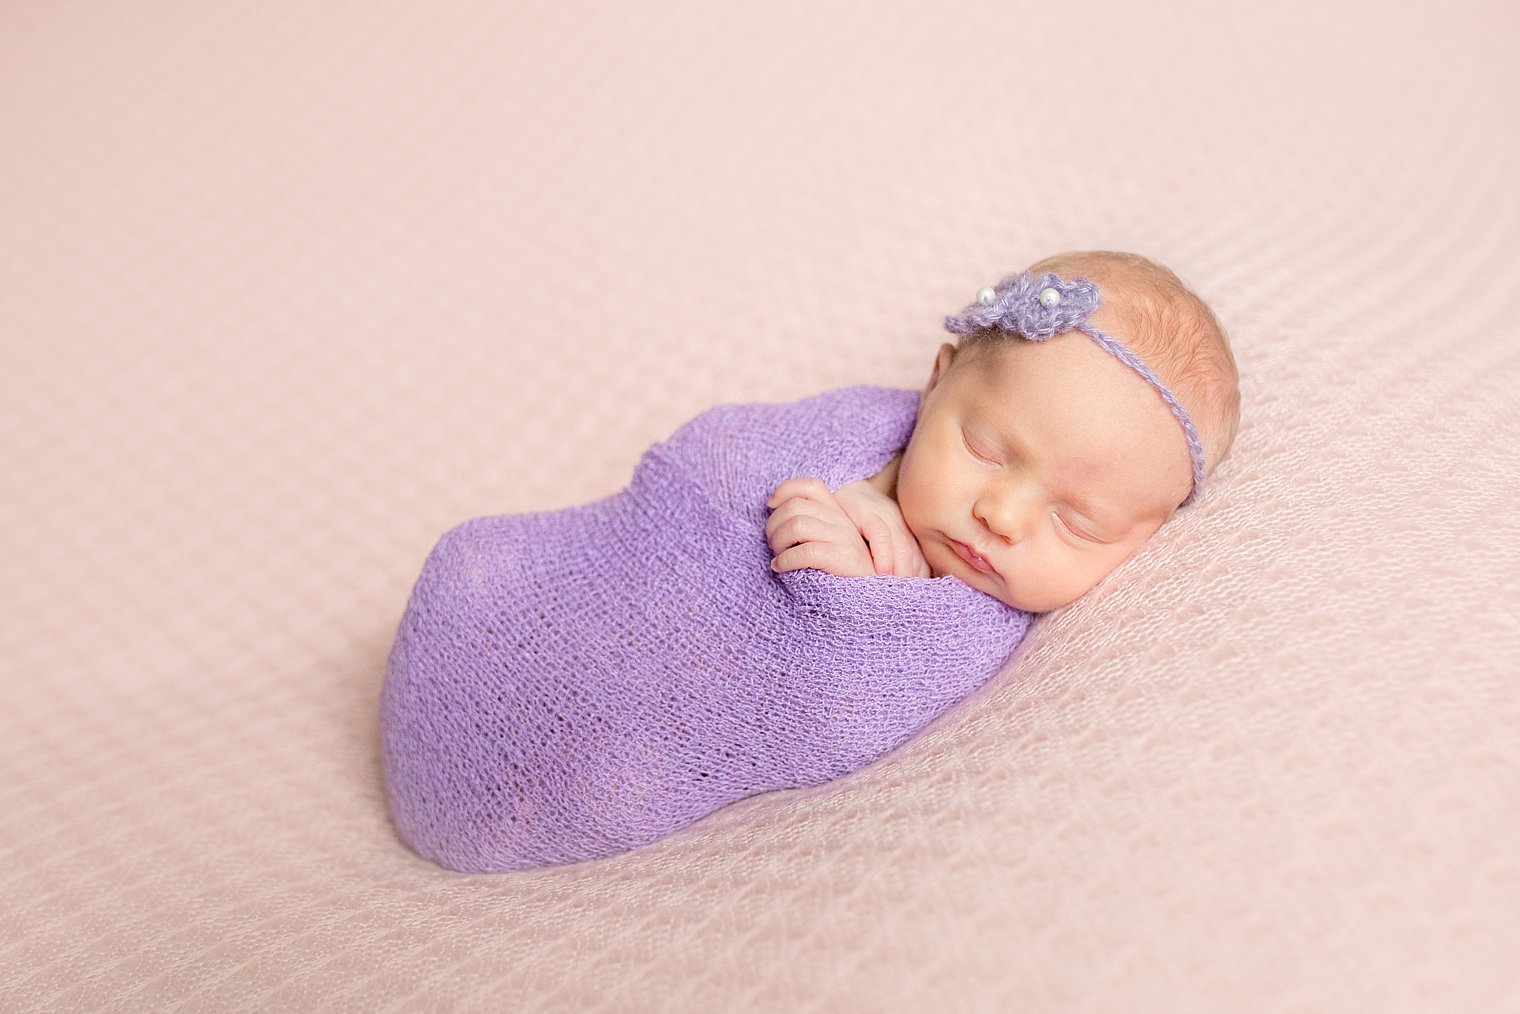 neptune-nj-newborn-photographer-10-2015_0003